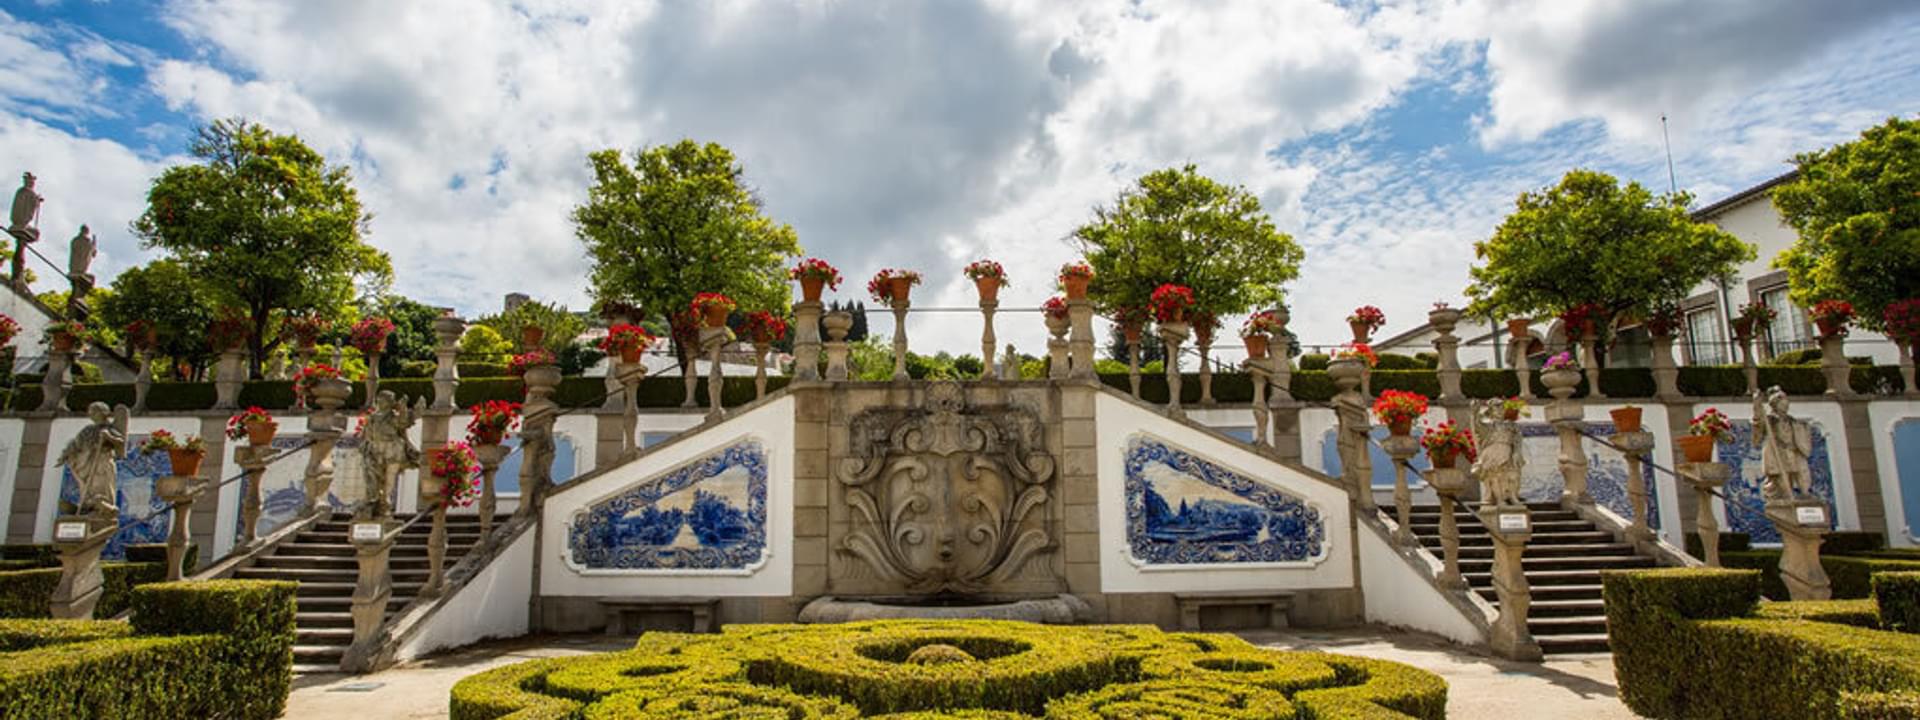 Der Garten des Bischofspalastes in Castelo Branco